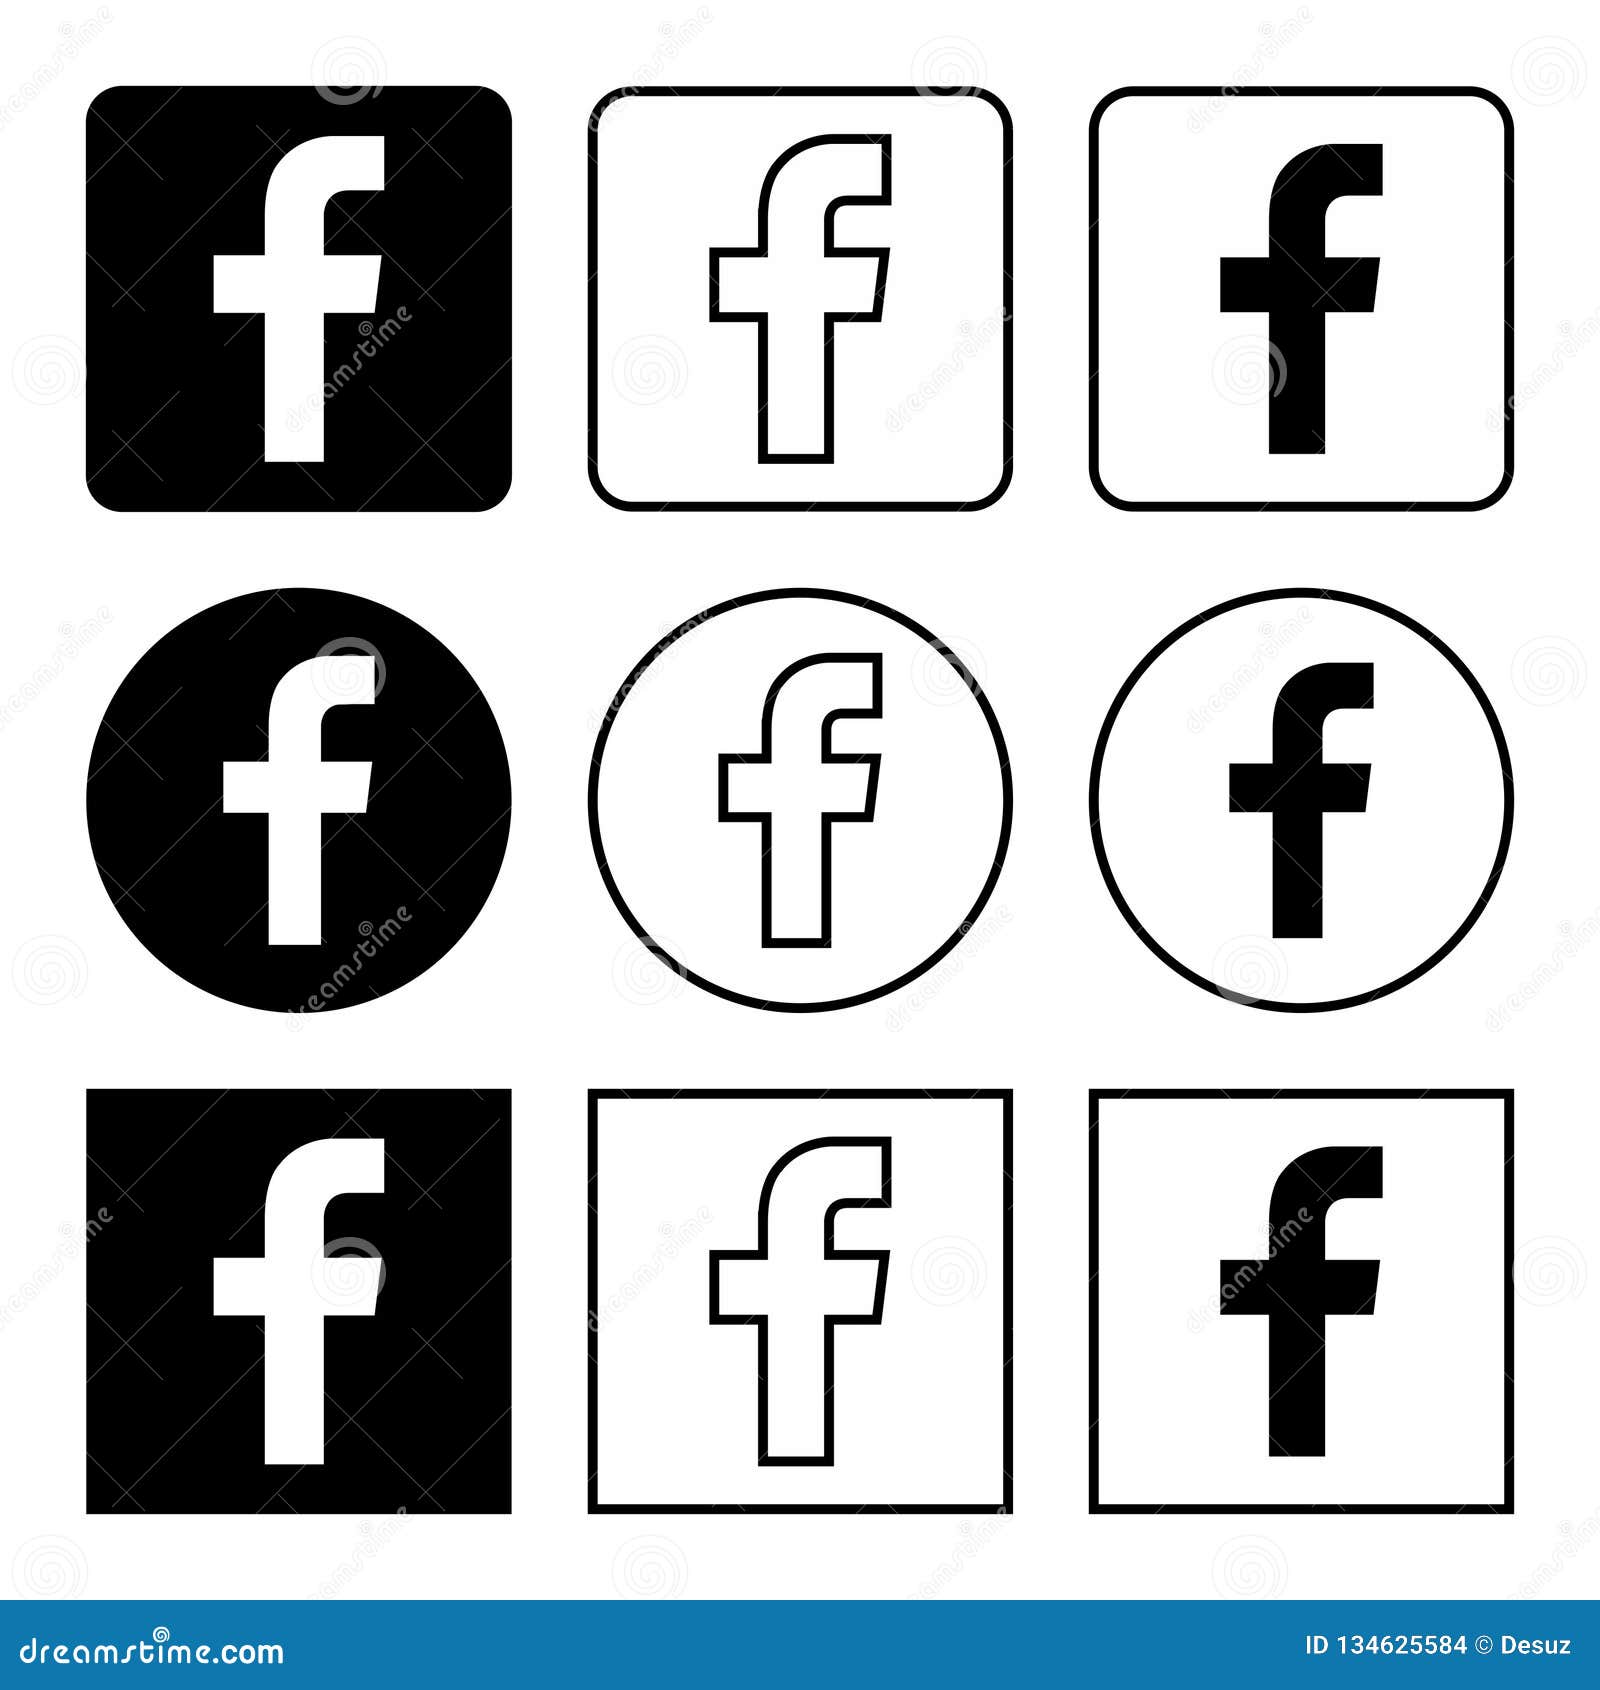 Icon Facebook Black And White Logo Amashusho Images